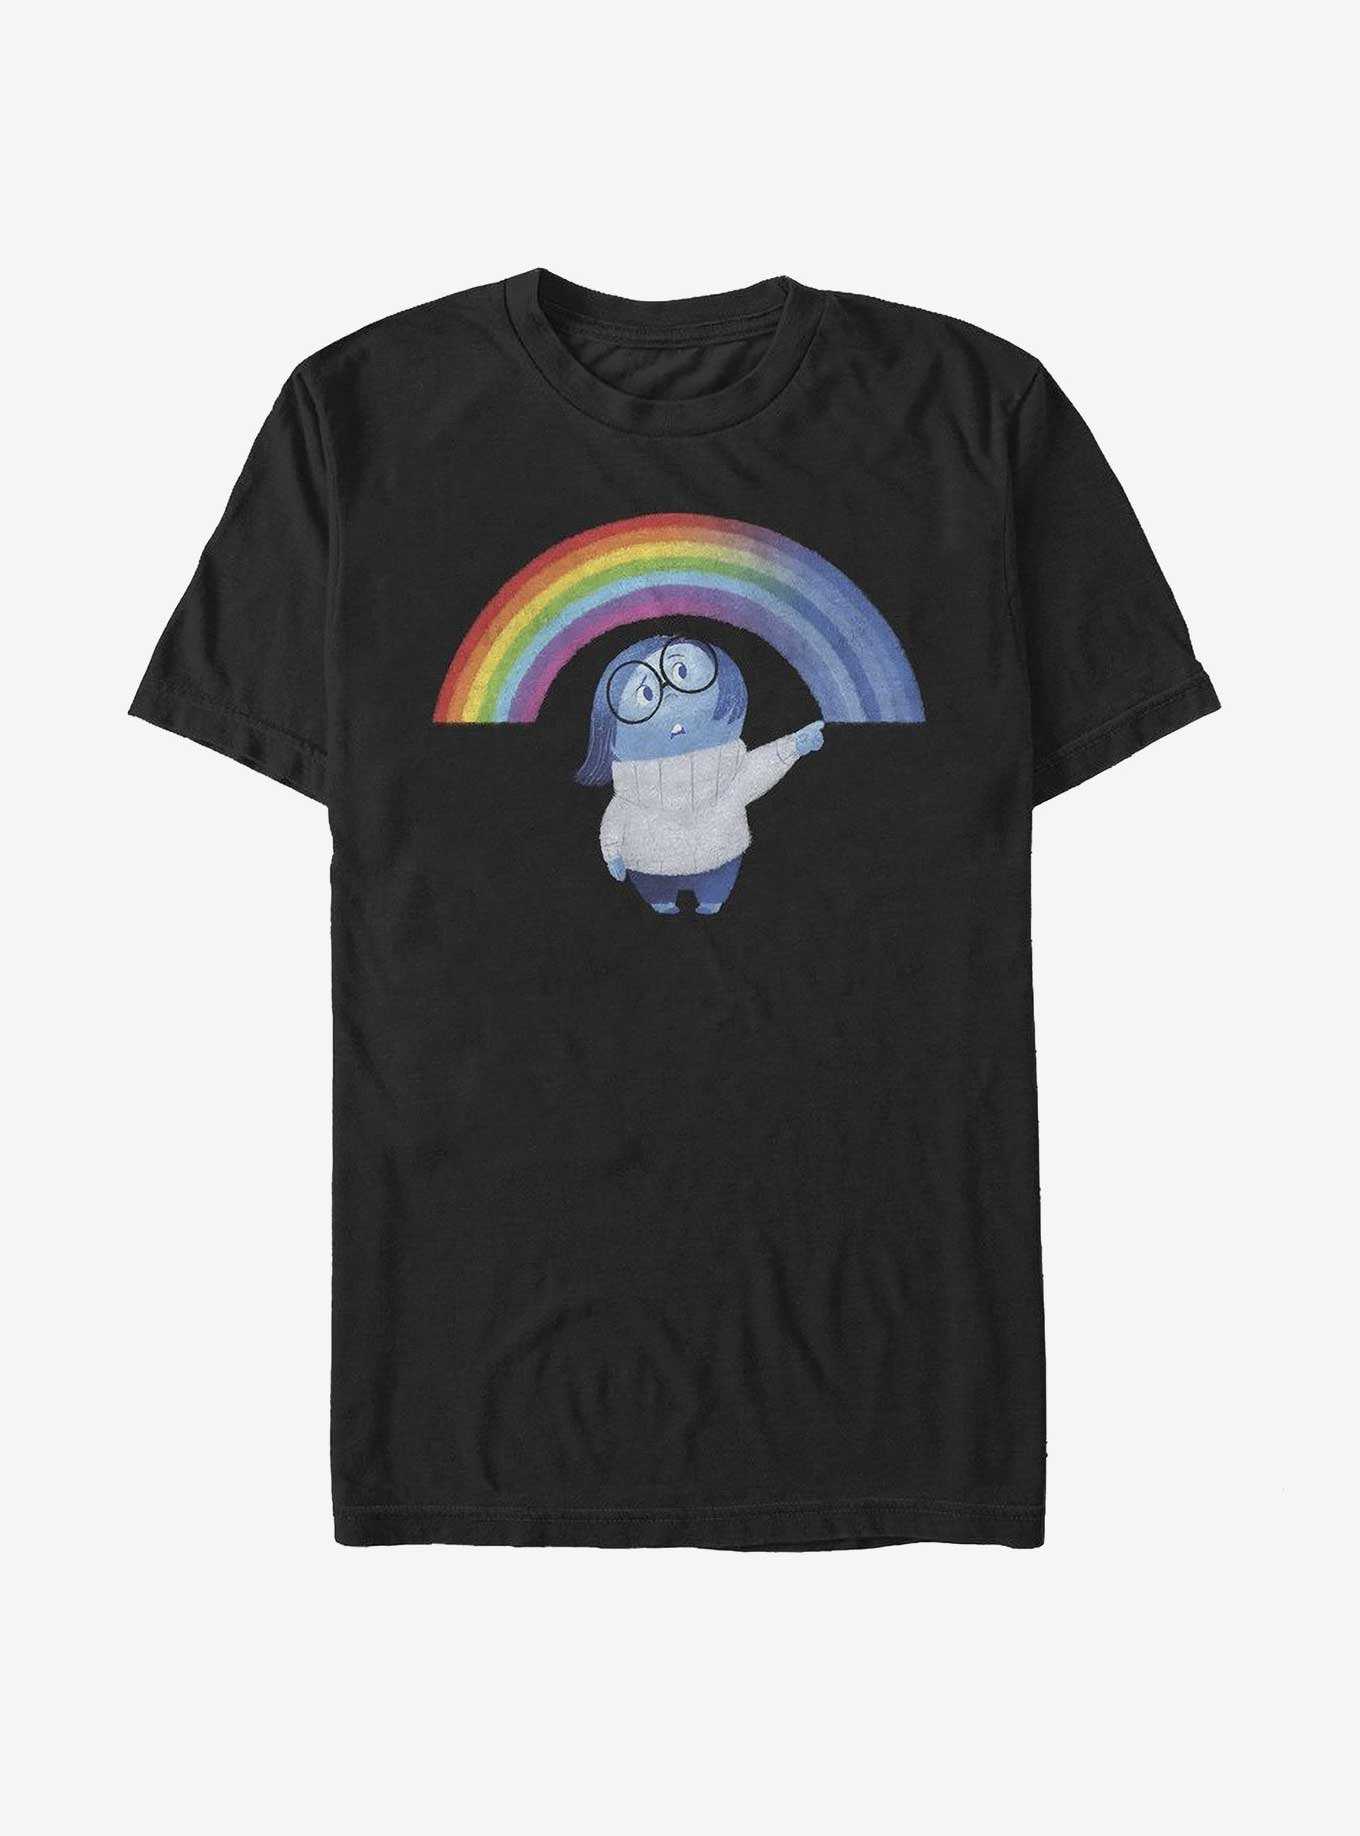 Disney Pixar Inside Out 2 Sadness Rainbow T-Shirt, , hi-res